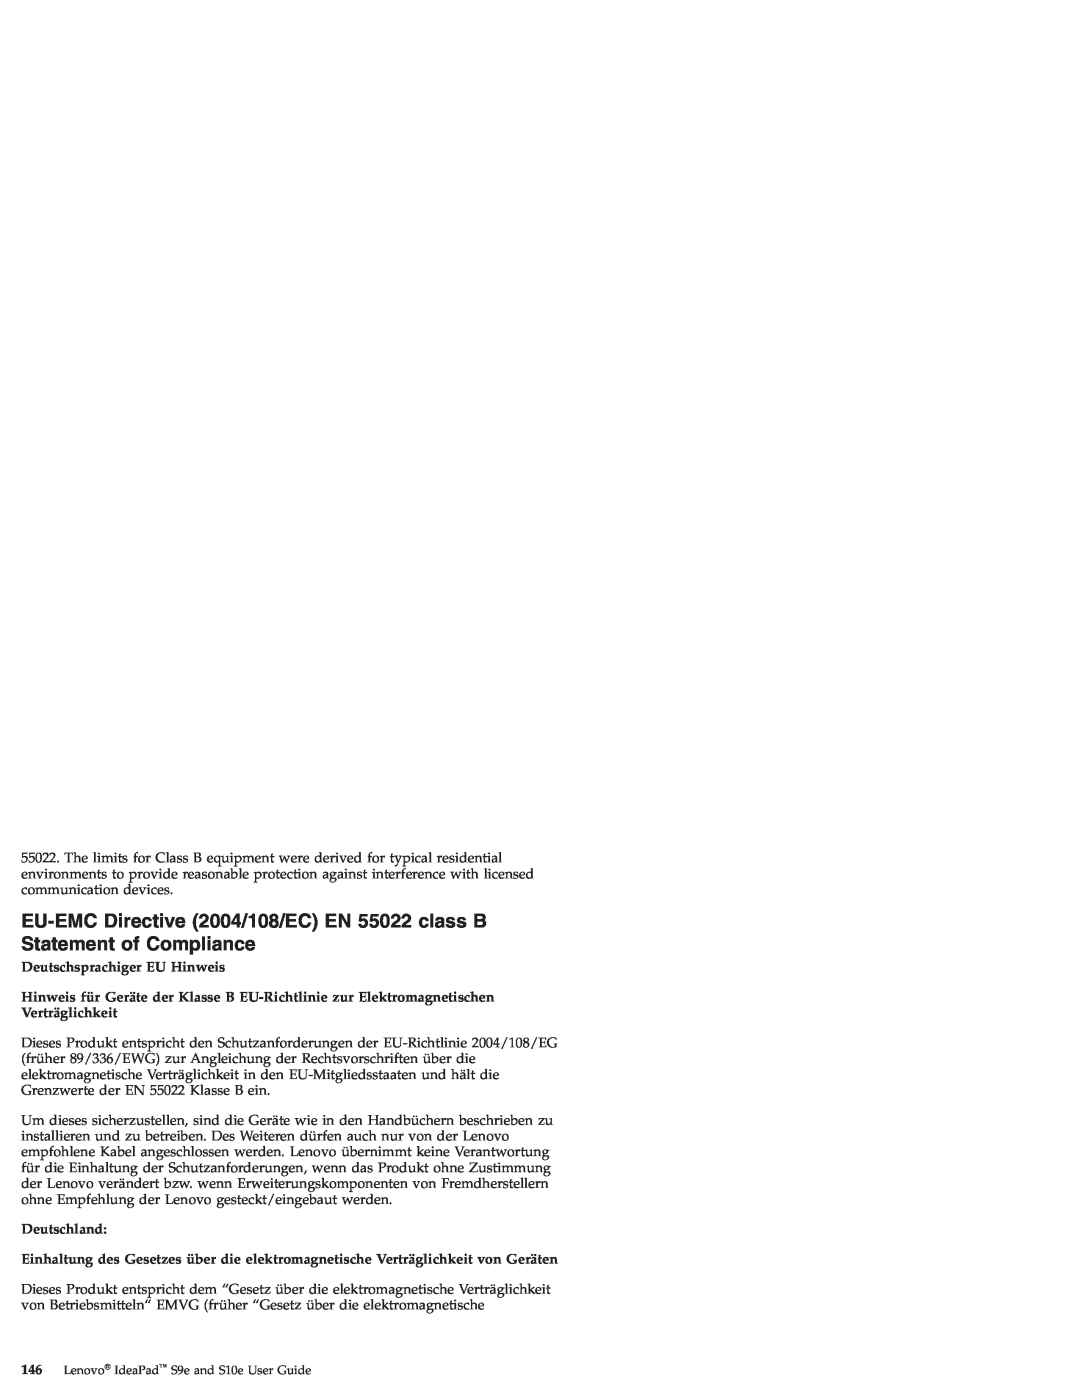 Lenovo S10E, S9E manual EU-EMC Directive 2004/108/EC EN 55022 class B Statement of Compliance, Deutschsprachiger EU Hinweis 